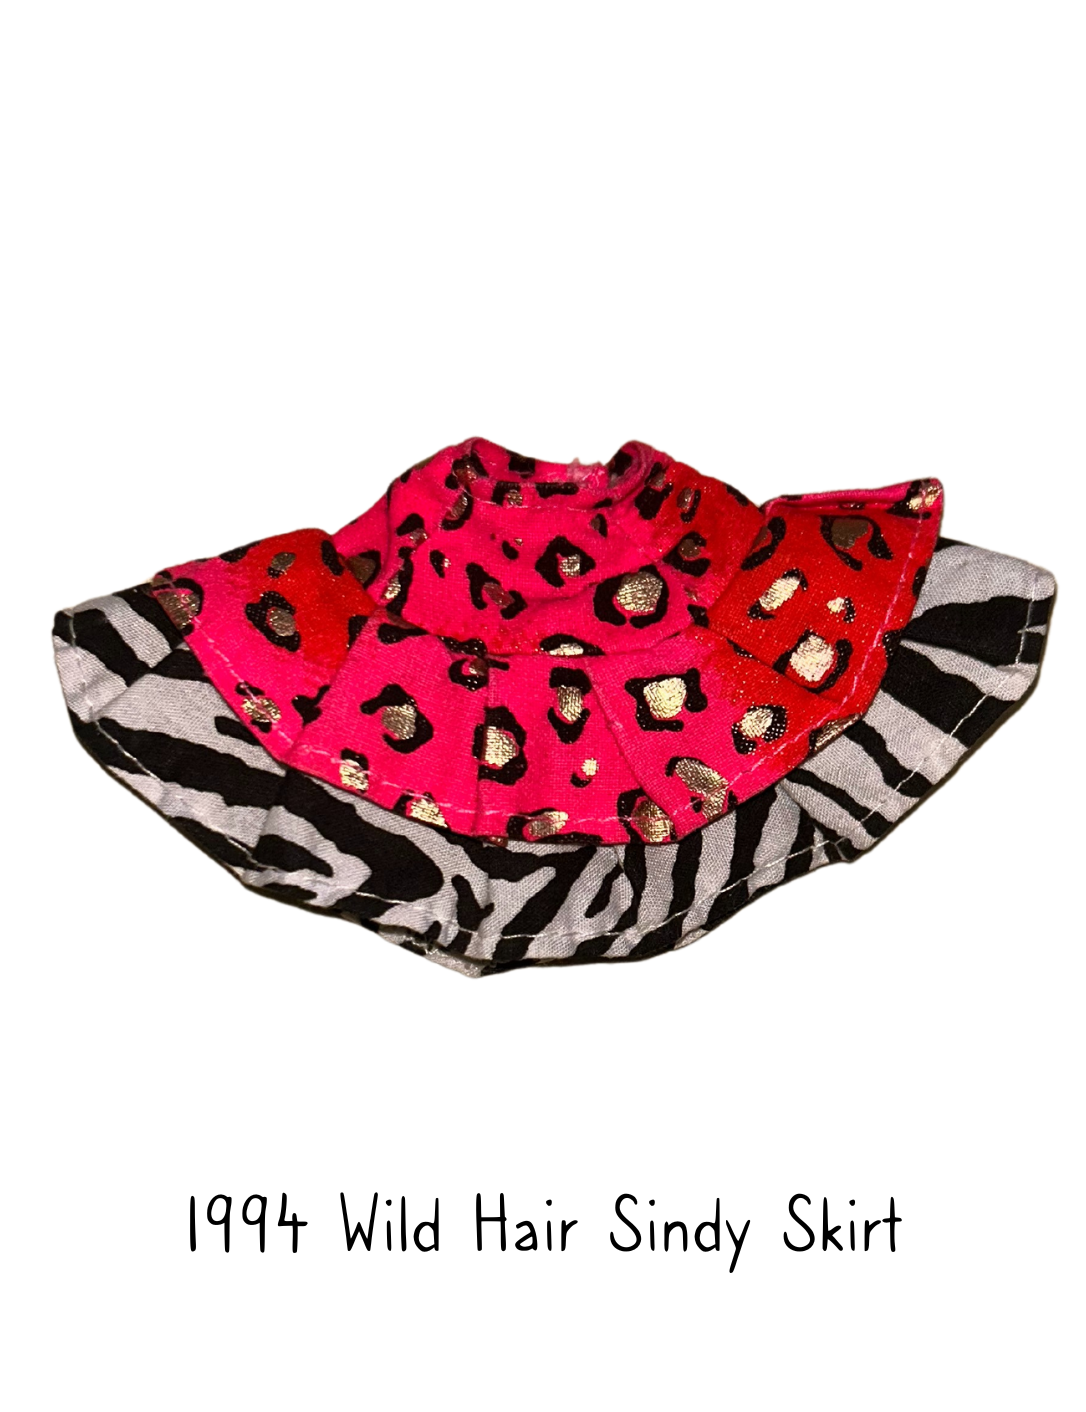 1994 Hasbro Wild Hair Sindy Skirt